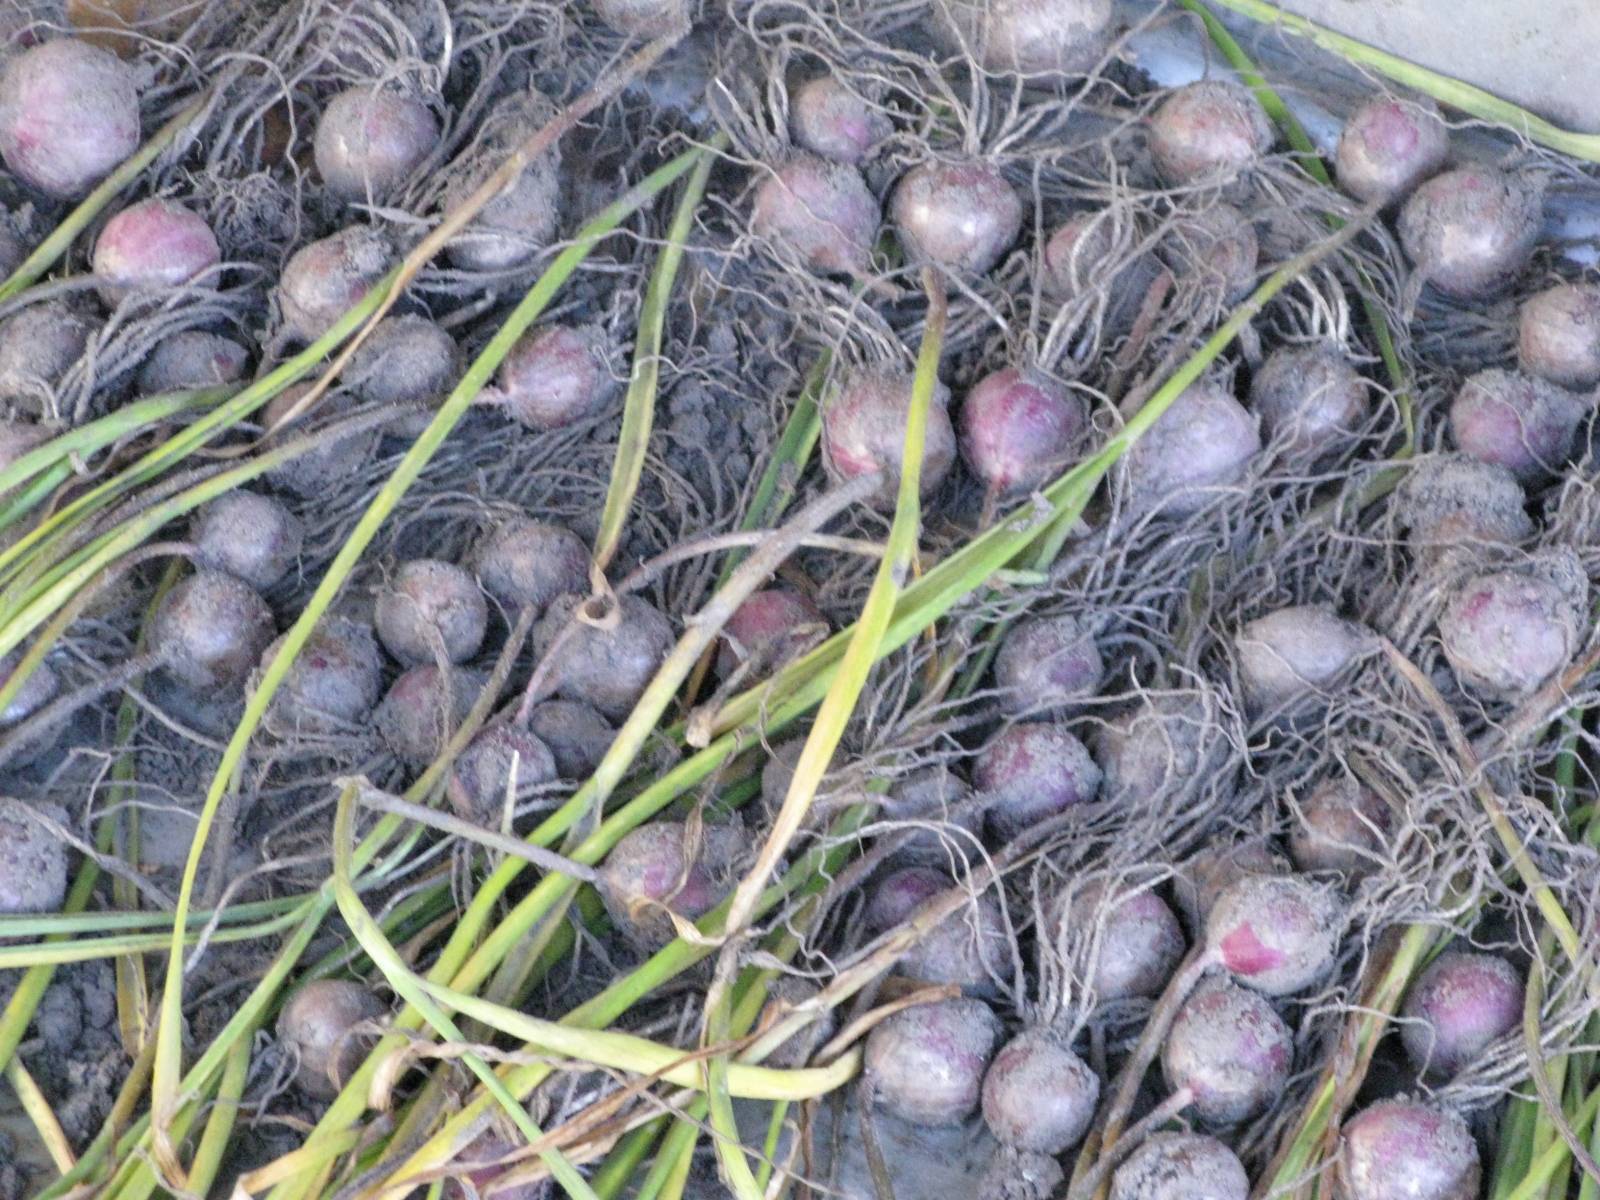 Выращивание чеснока посадкой бульбочками: когда сажать весной и осенью